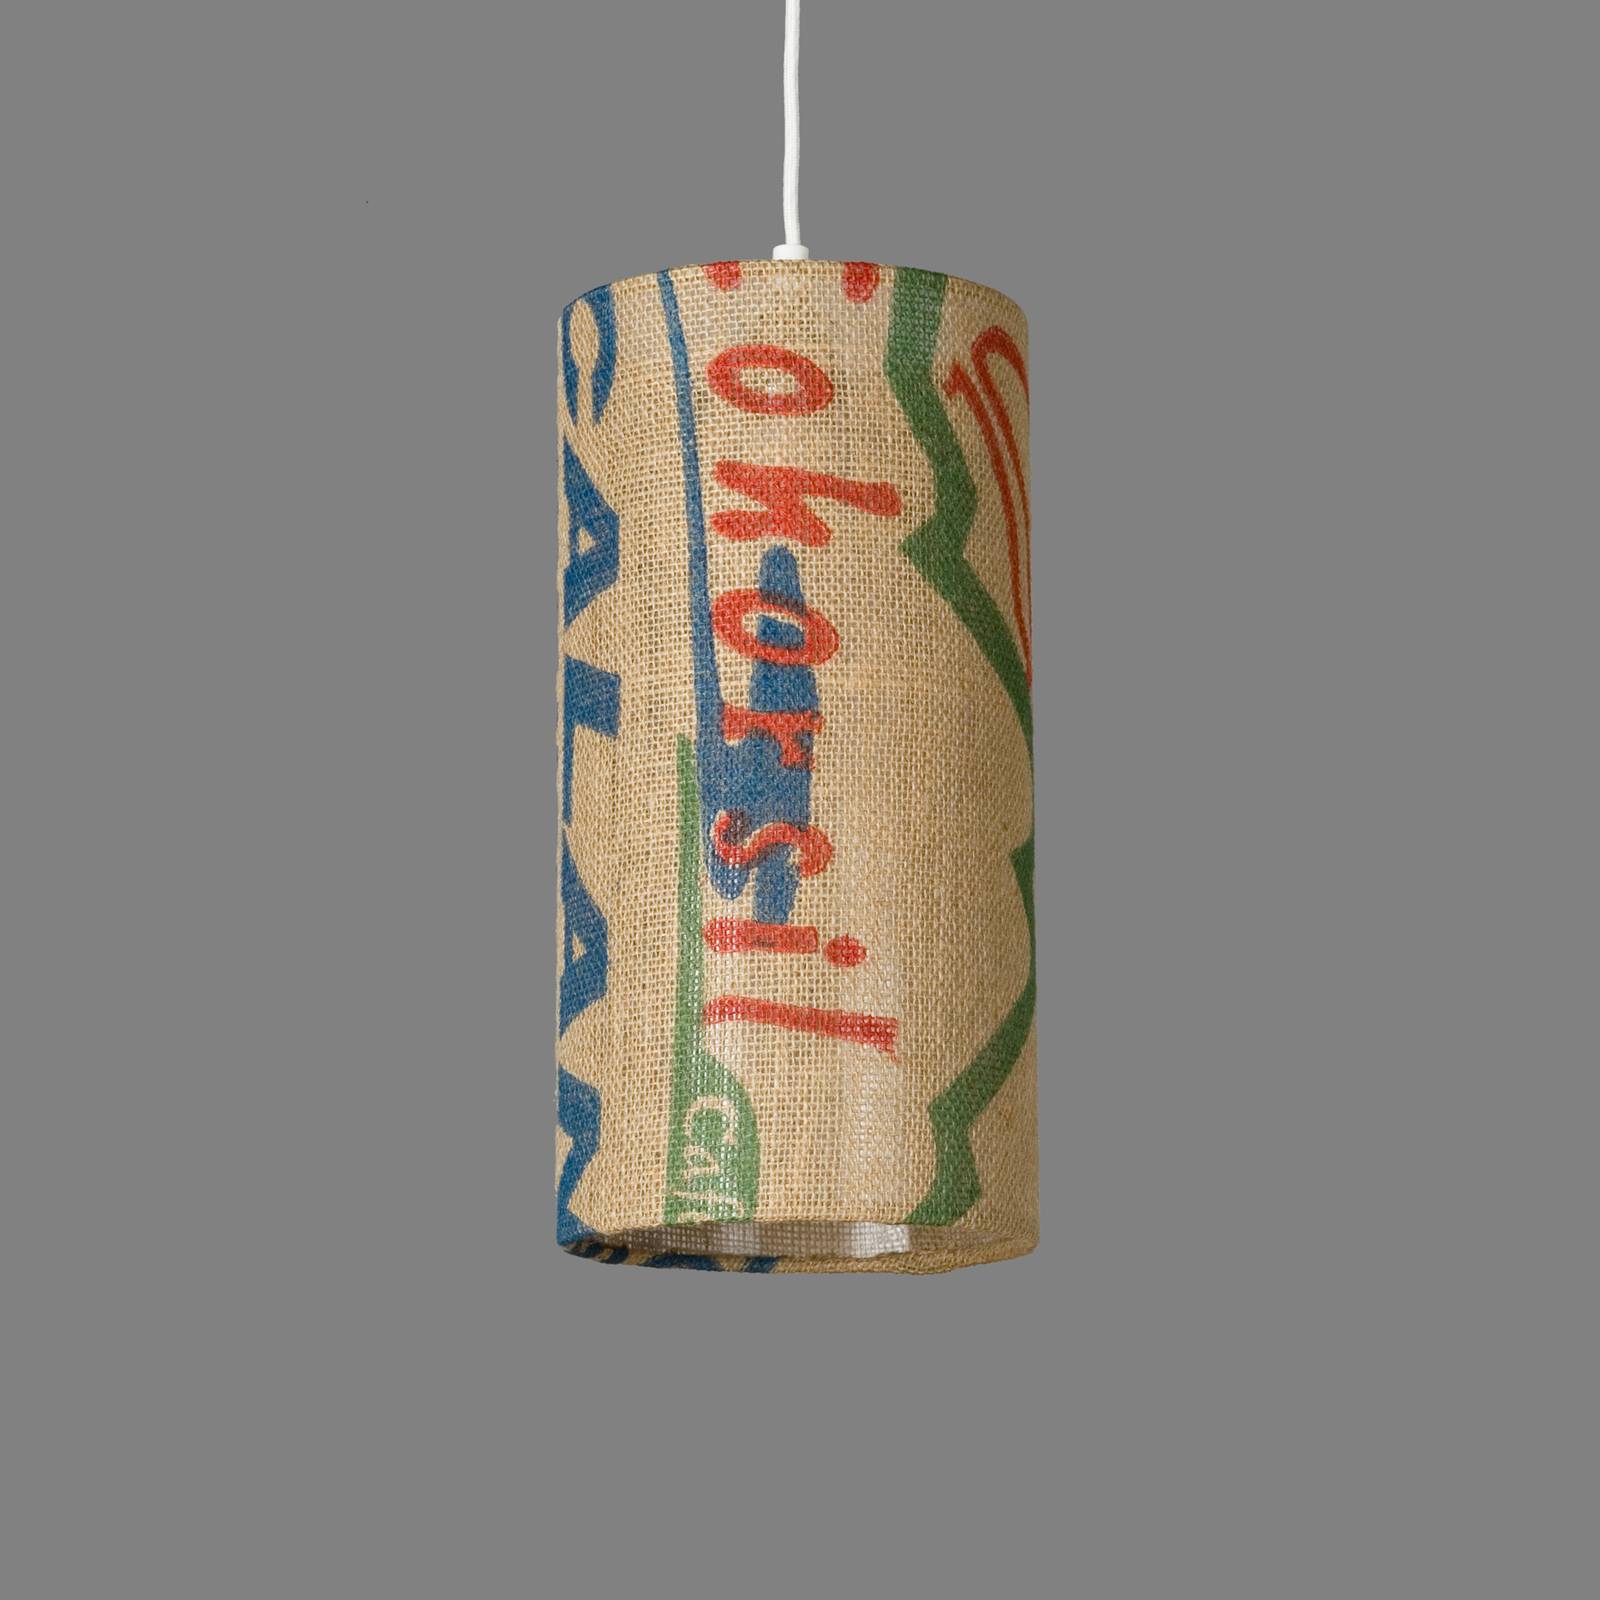 Lumbono függő lámpa n°91 perlbohne jute kávézacskóból